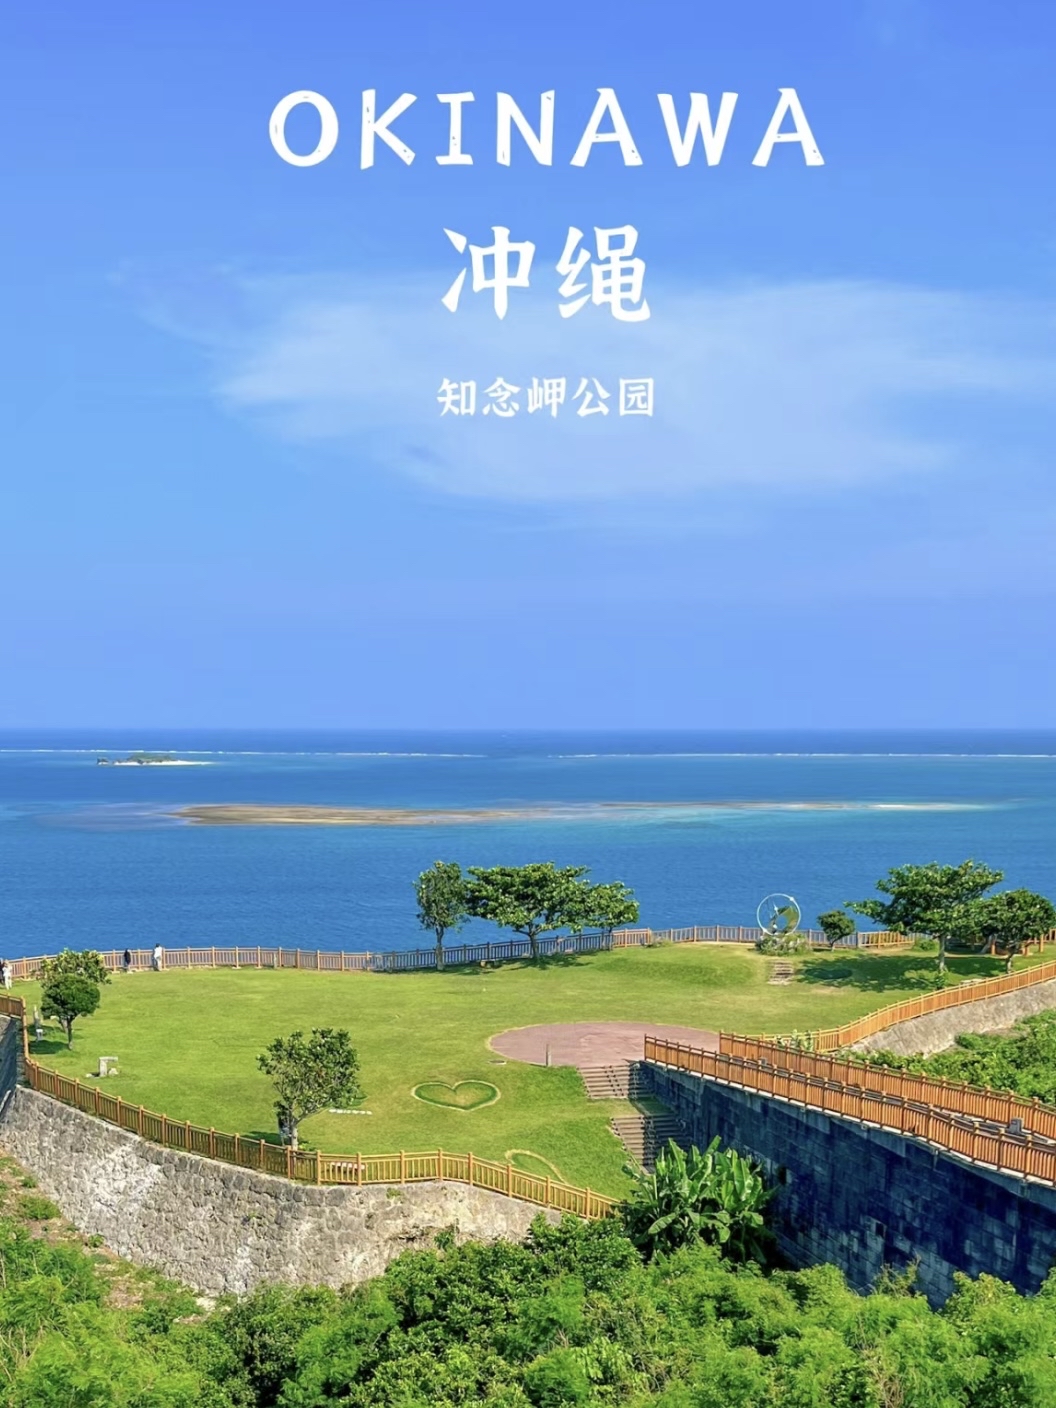 冲绳最美公园，可以遥望太平洋，看蔚蓝色渐变的海面。[Joyful][Joyful][Joyful]